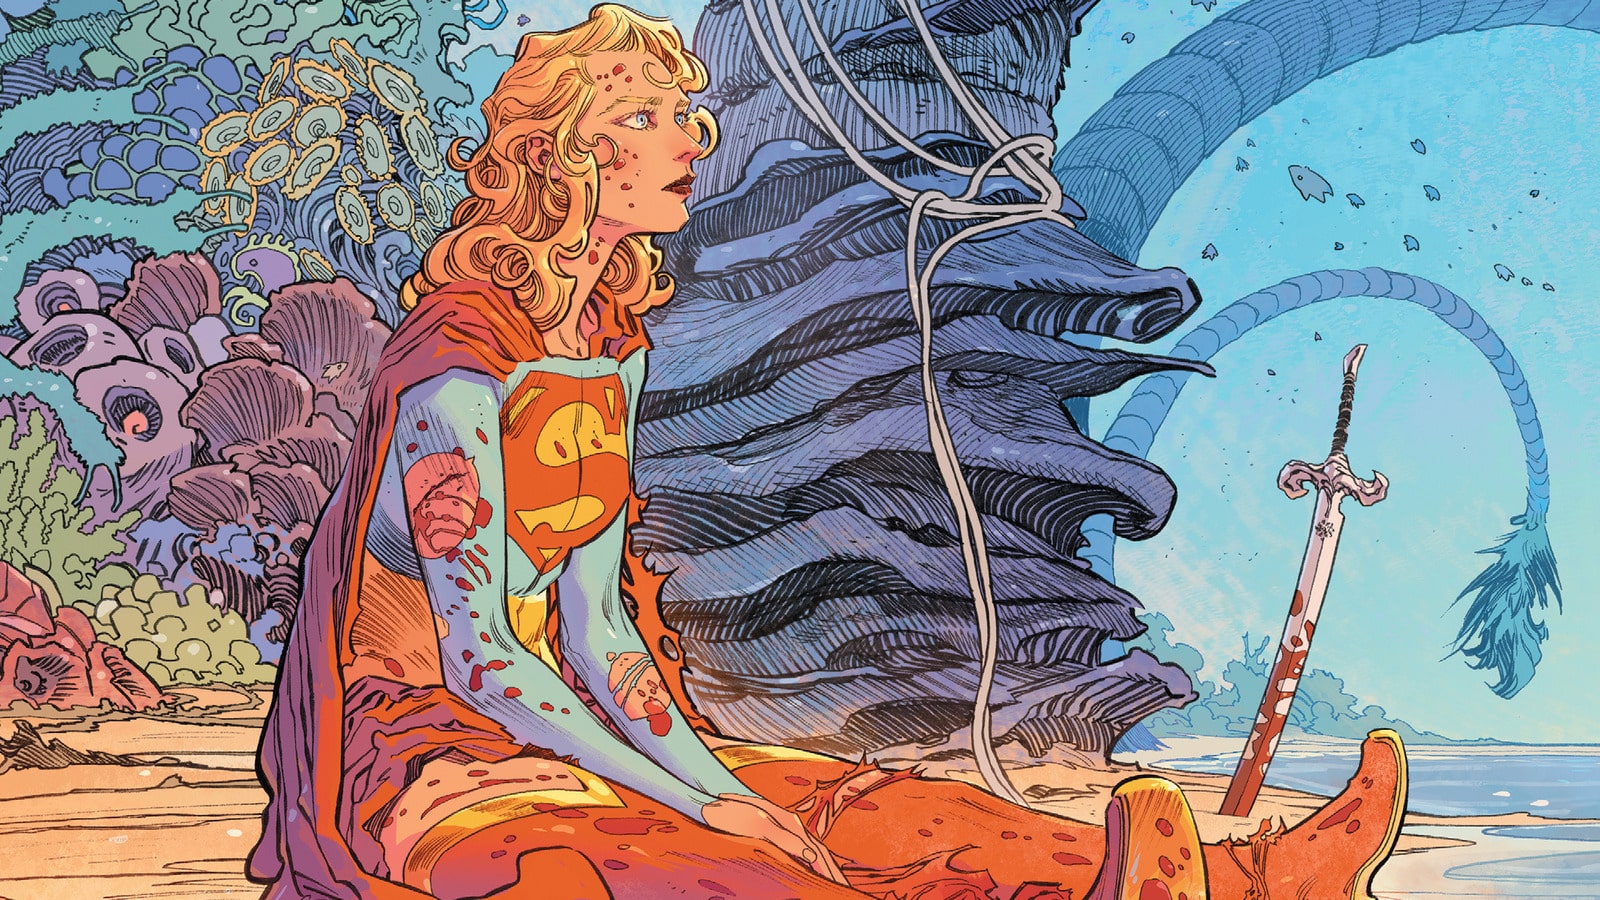 Supergirl - Woman of Tomorrow imagem dos quadrinhos